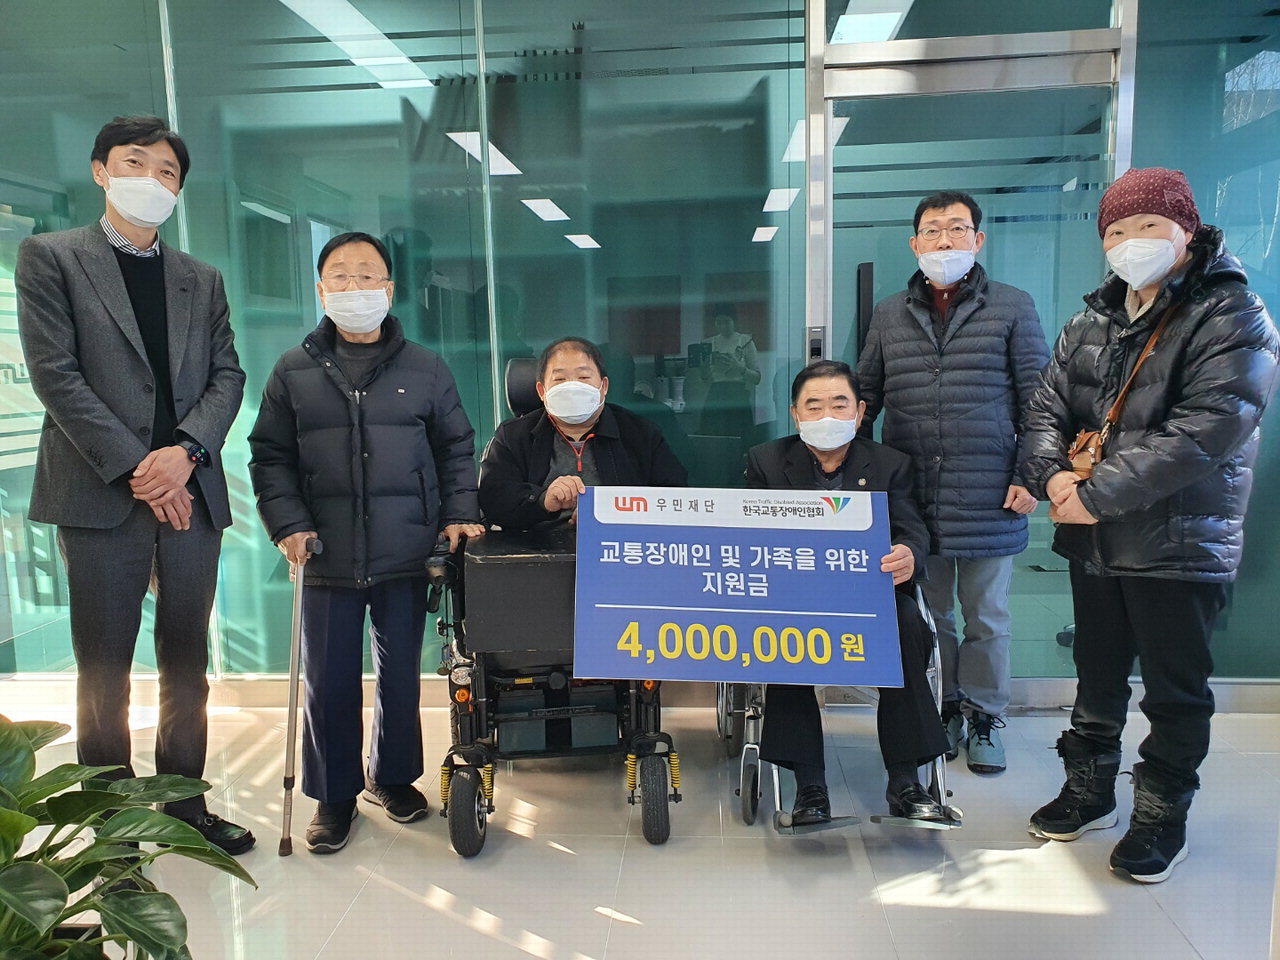 우민재단(이사장 장덕수)은 복지사업의 일환으로 (사)한국장애인장학회와 (사)한국교통장애인협회에 지원금 400만원을 2일 전달했다.